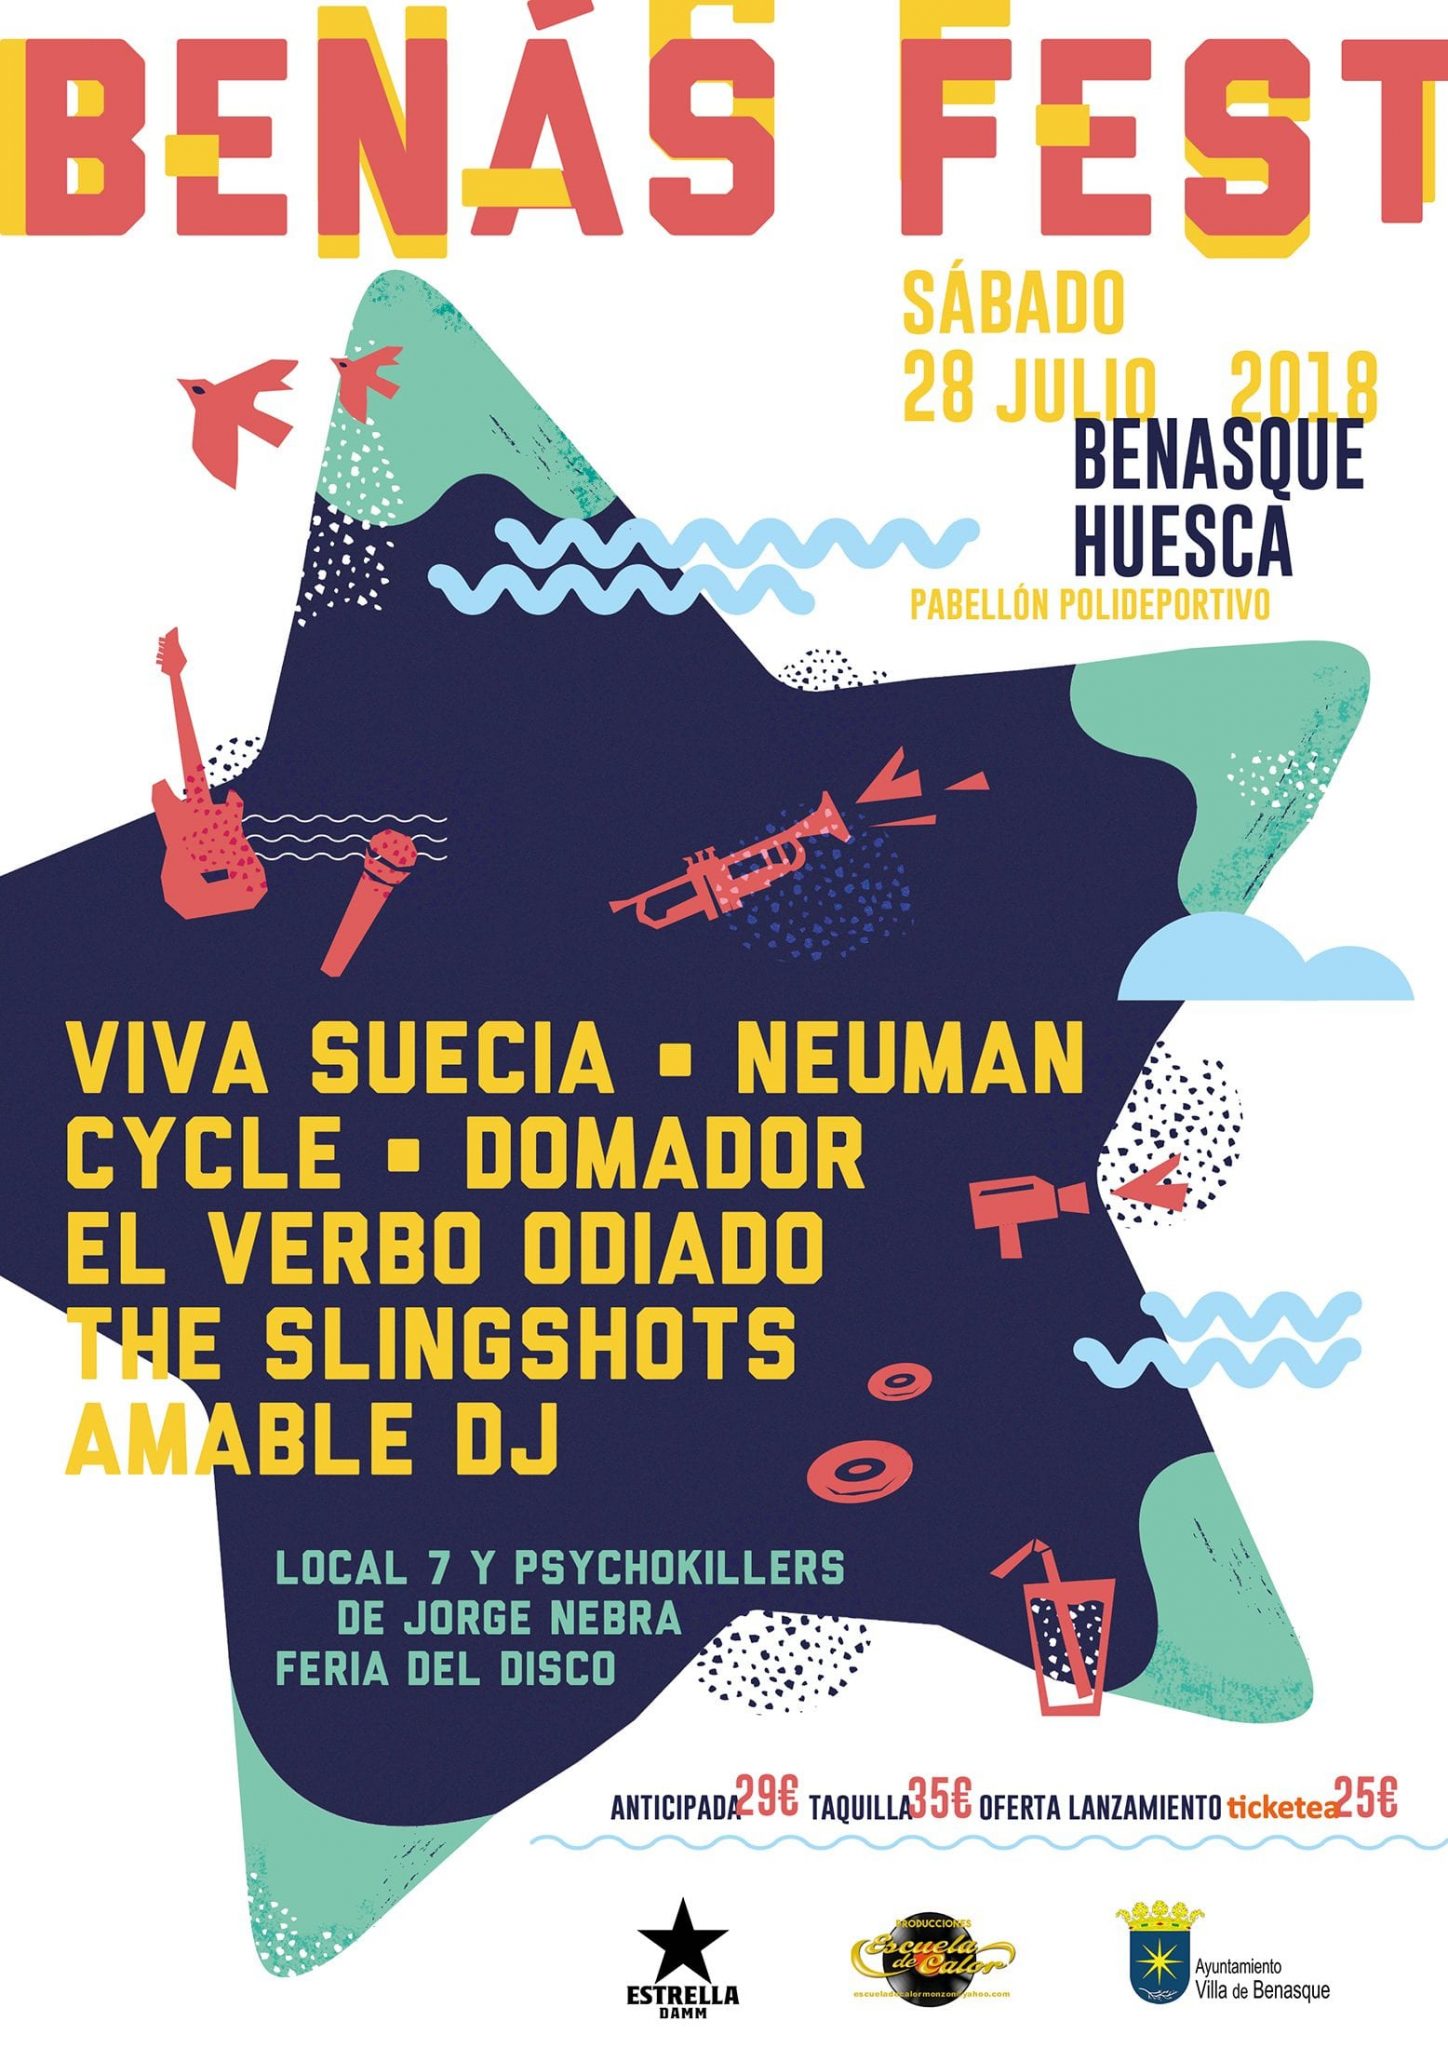 Benasque ya tiene su festival: Benás Fest